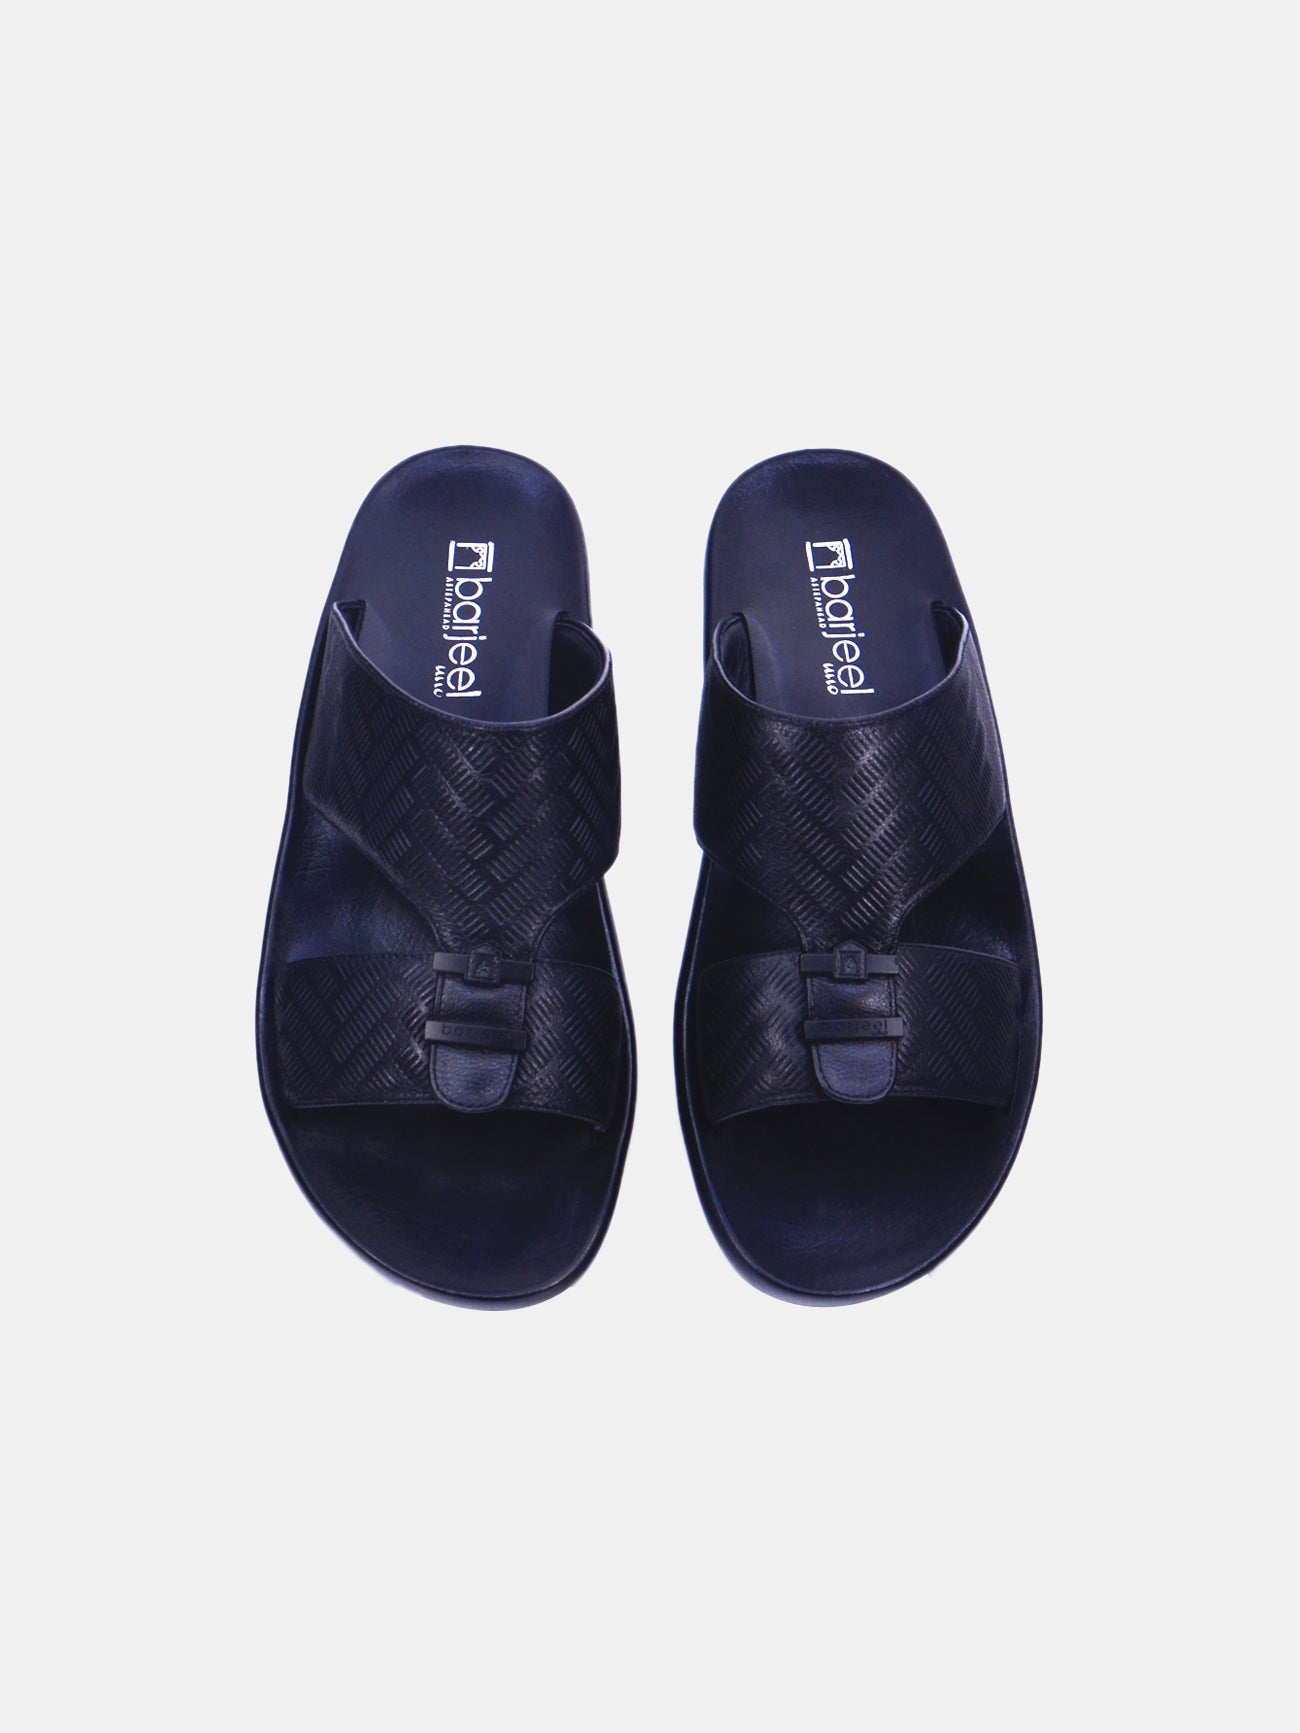 Barjeel Uno 63073 Boys Sandals #color_Black